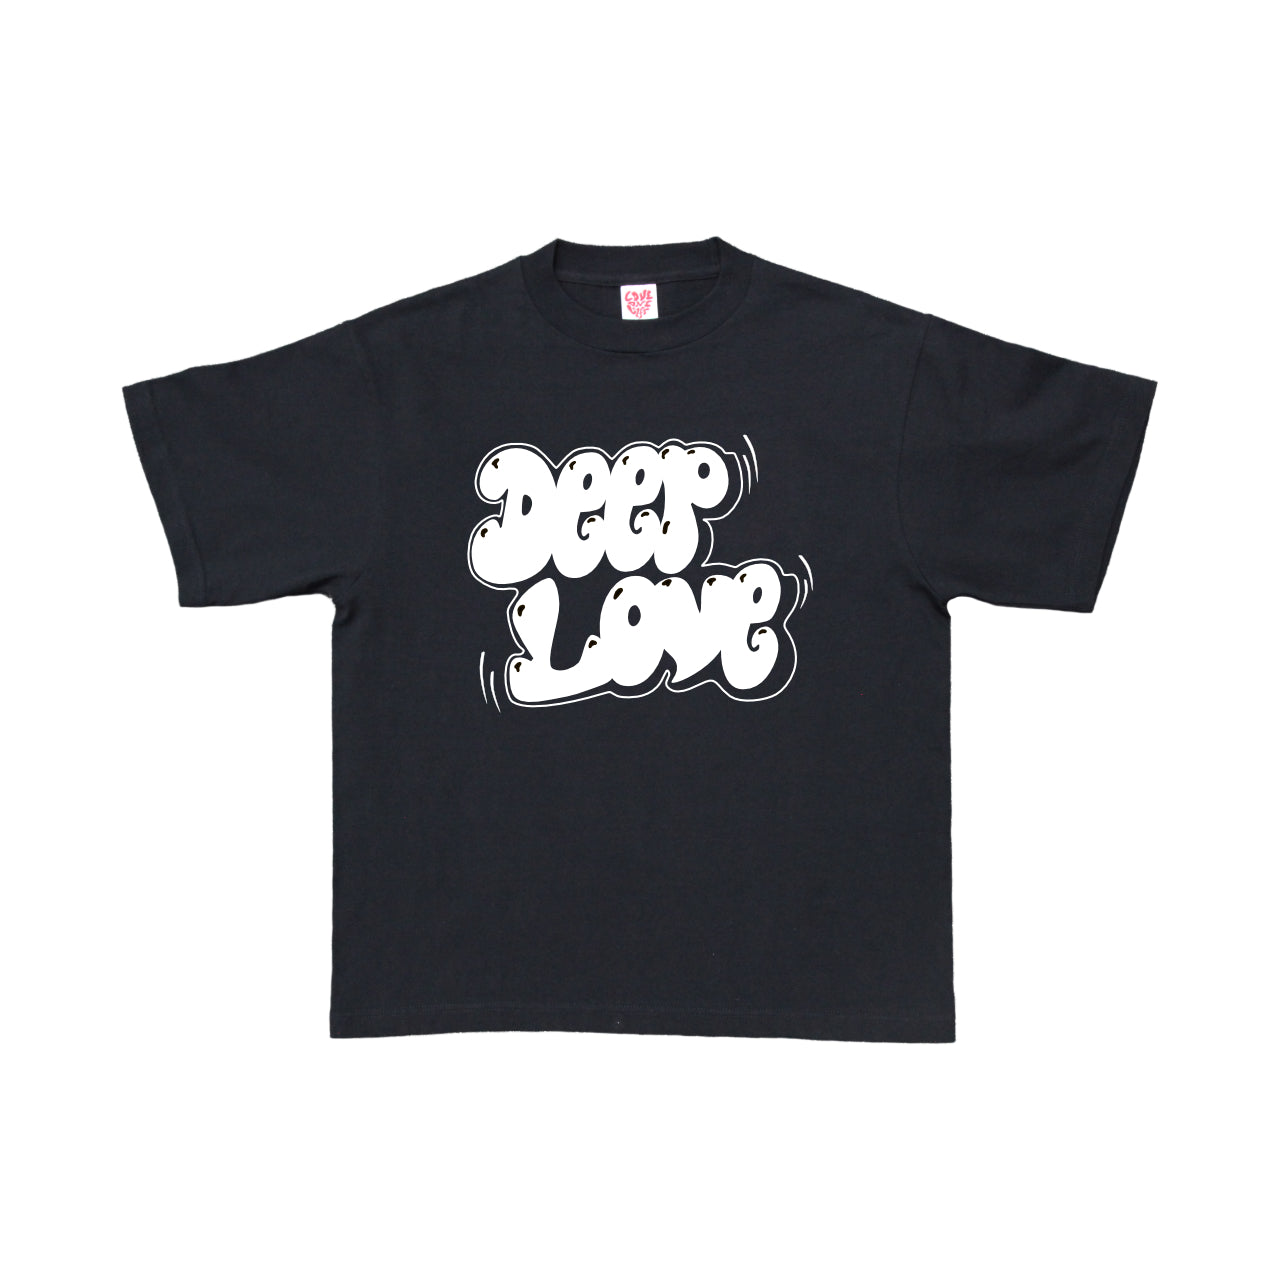 deep love tee in black